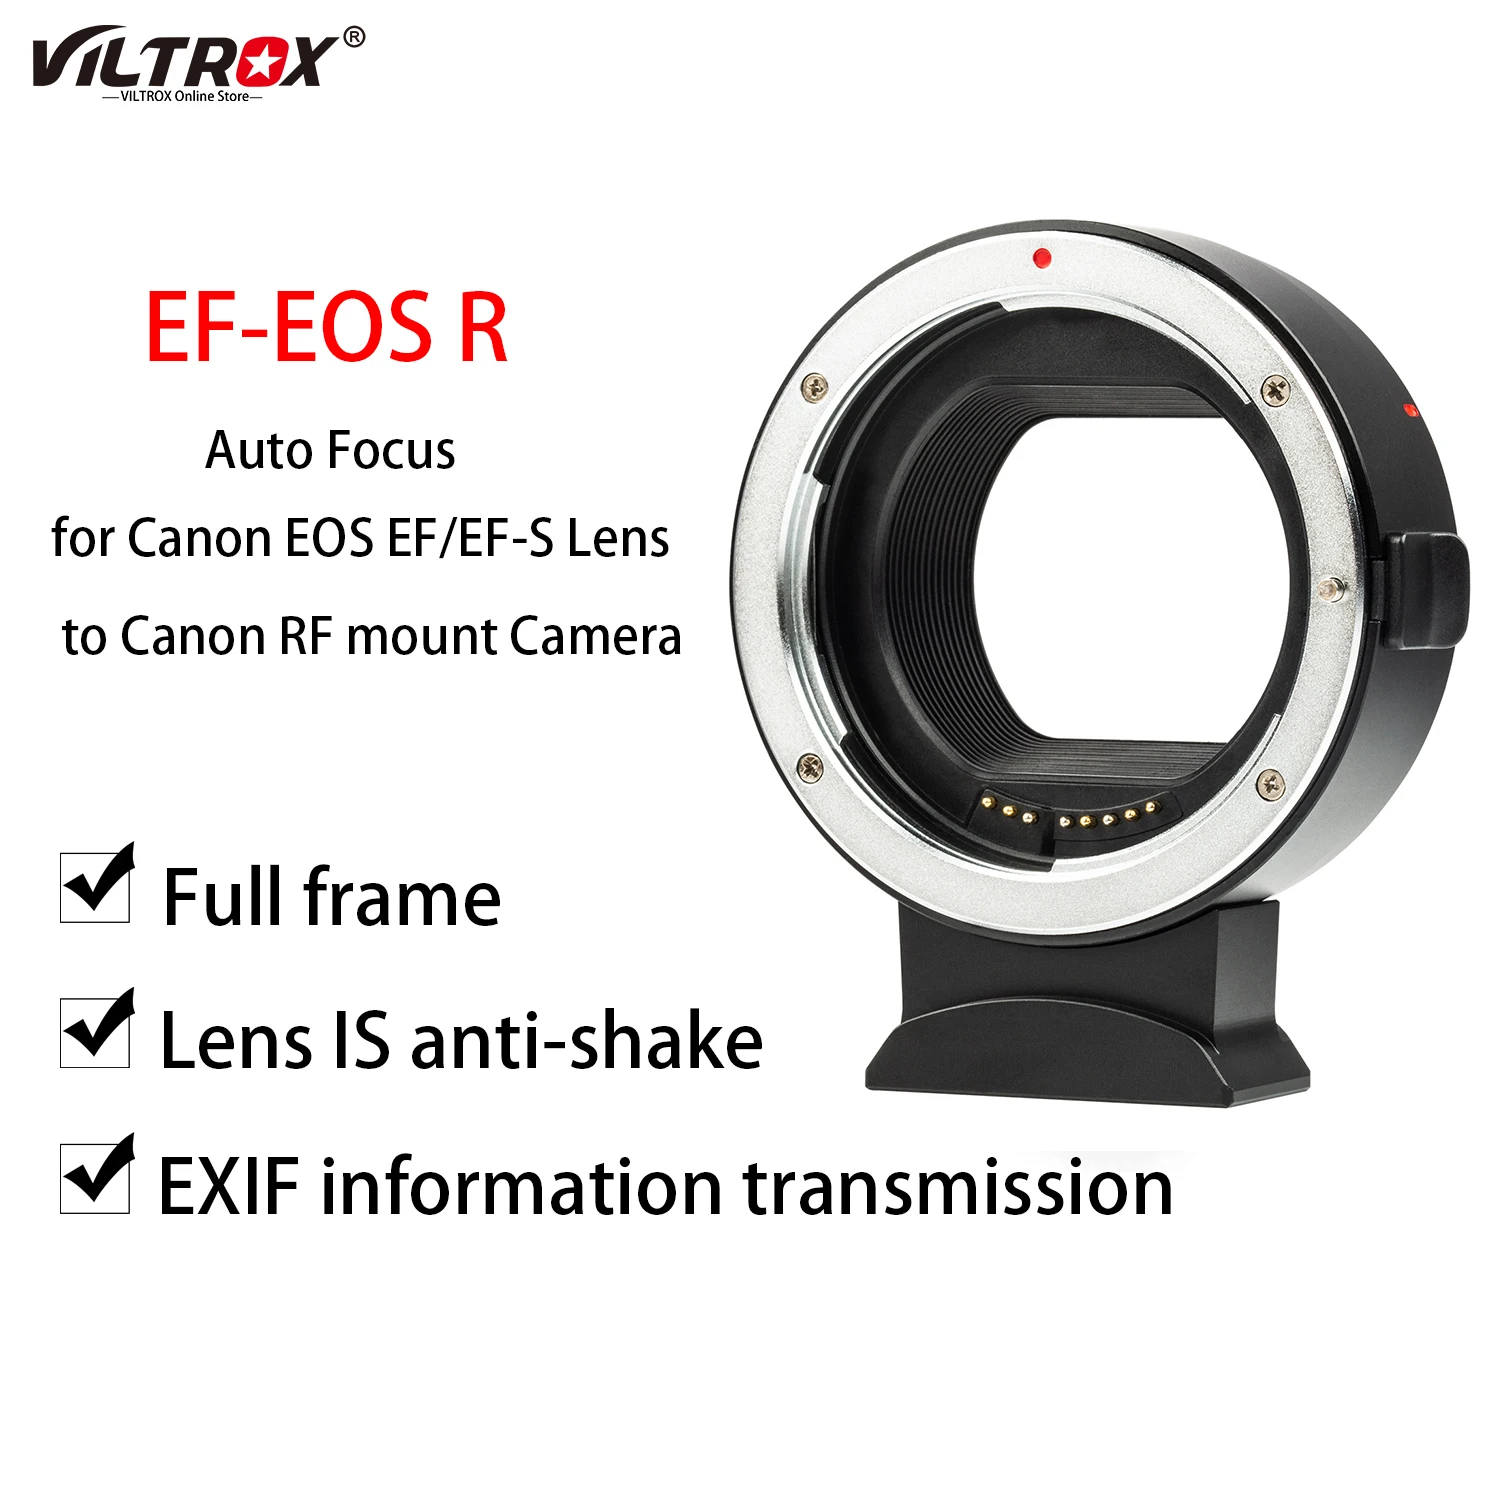 

Адаптер Viltrox для объектива с кольцом-адаптером, адаптер с автоматической фокусировкой для Canon EOS EF/детской линзы для камеры Canon RF EOS R R6 RP R5